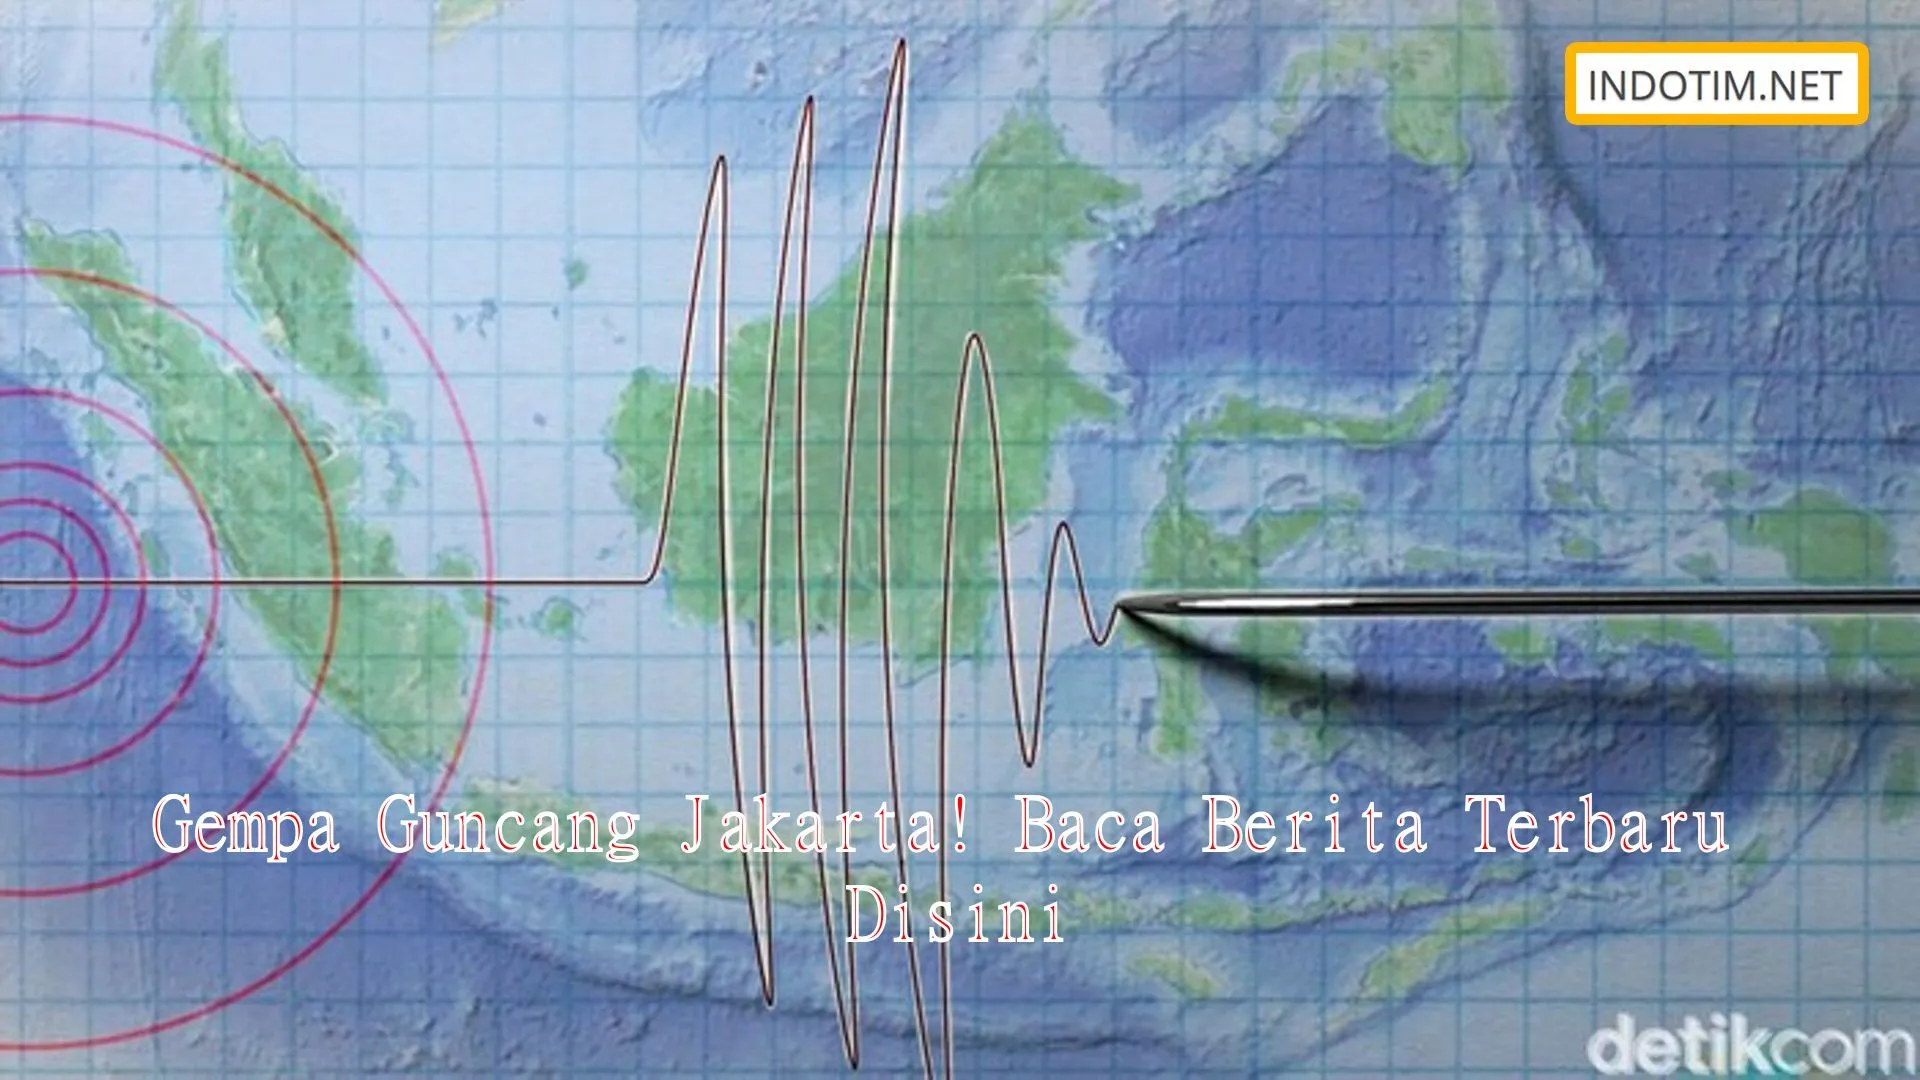 Gempa Guncang Jakarta! Baca Berita Terbaru Disini